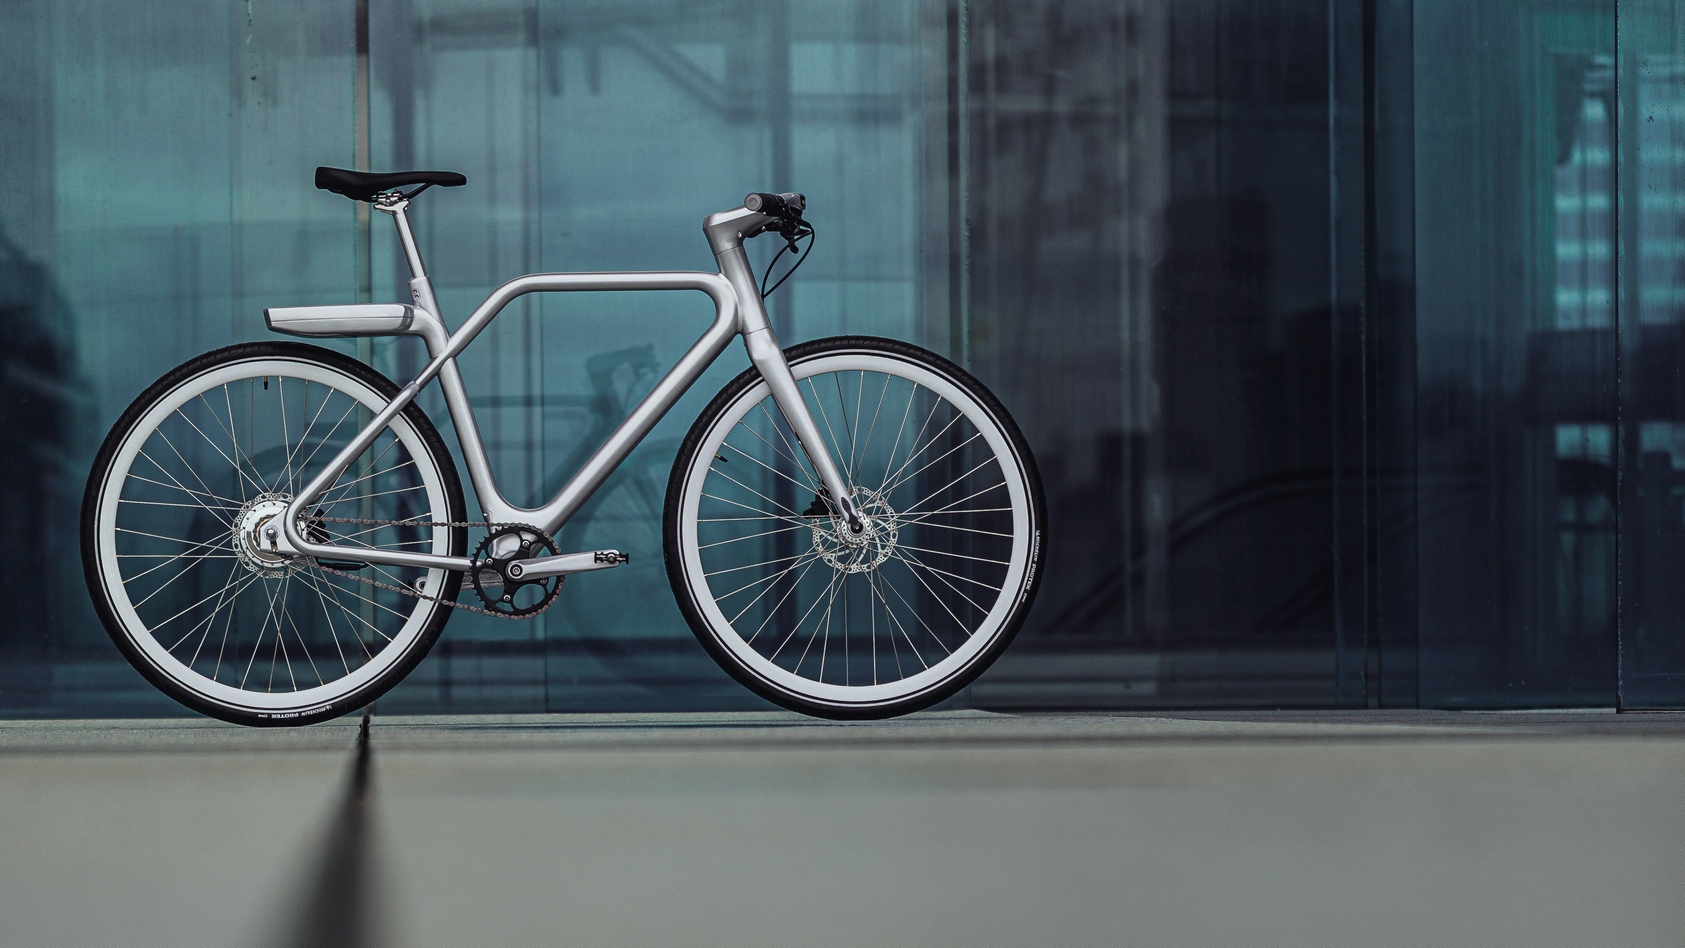 Le vélo à assistance électrique Angell revendique une conception inspirée d’Apple. © Angell